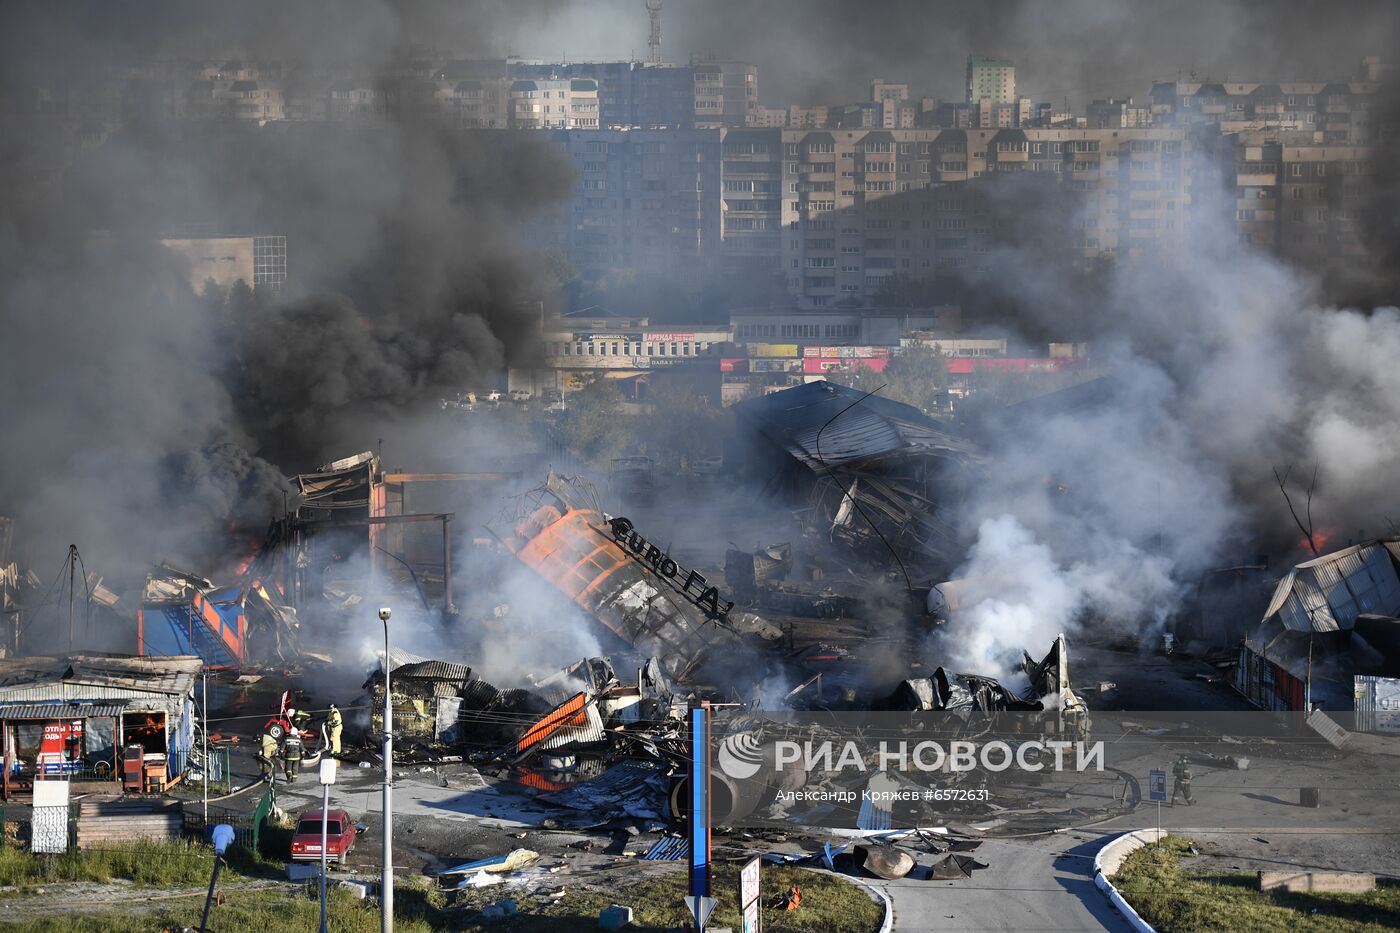 Автозаправка горит в Новосибирске